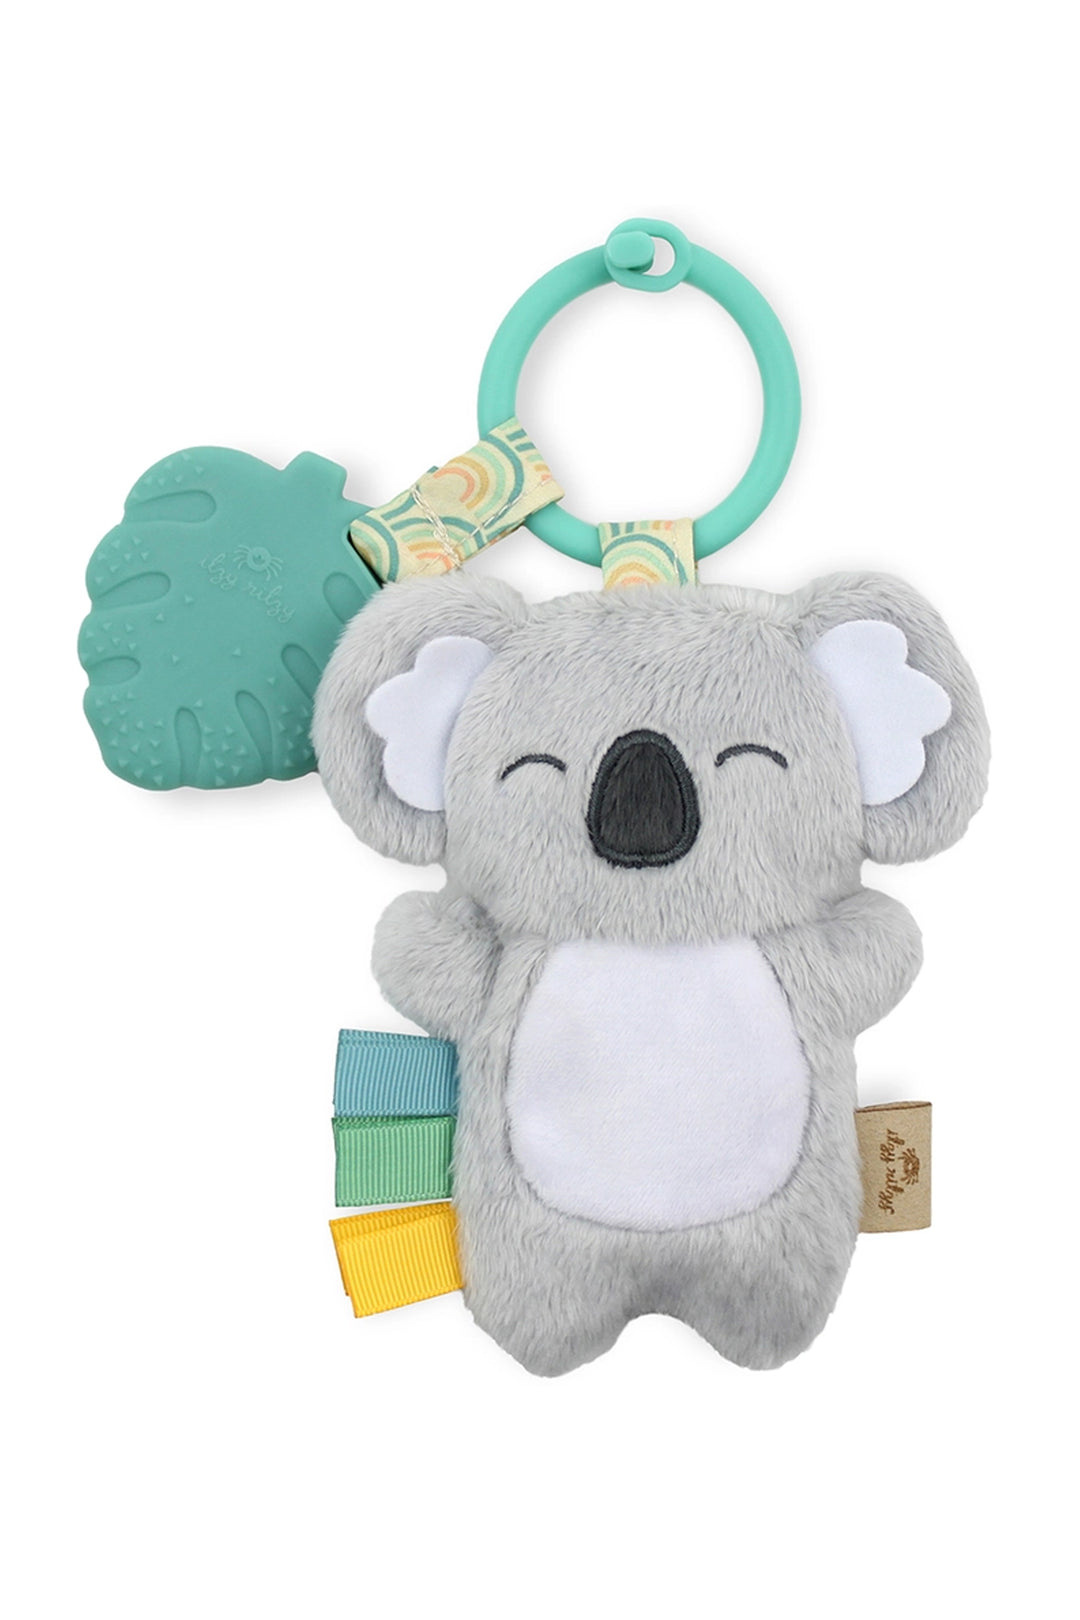 Plush and teething toy - Koala